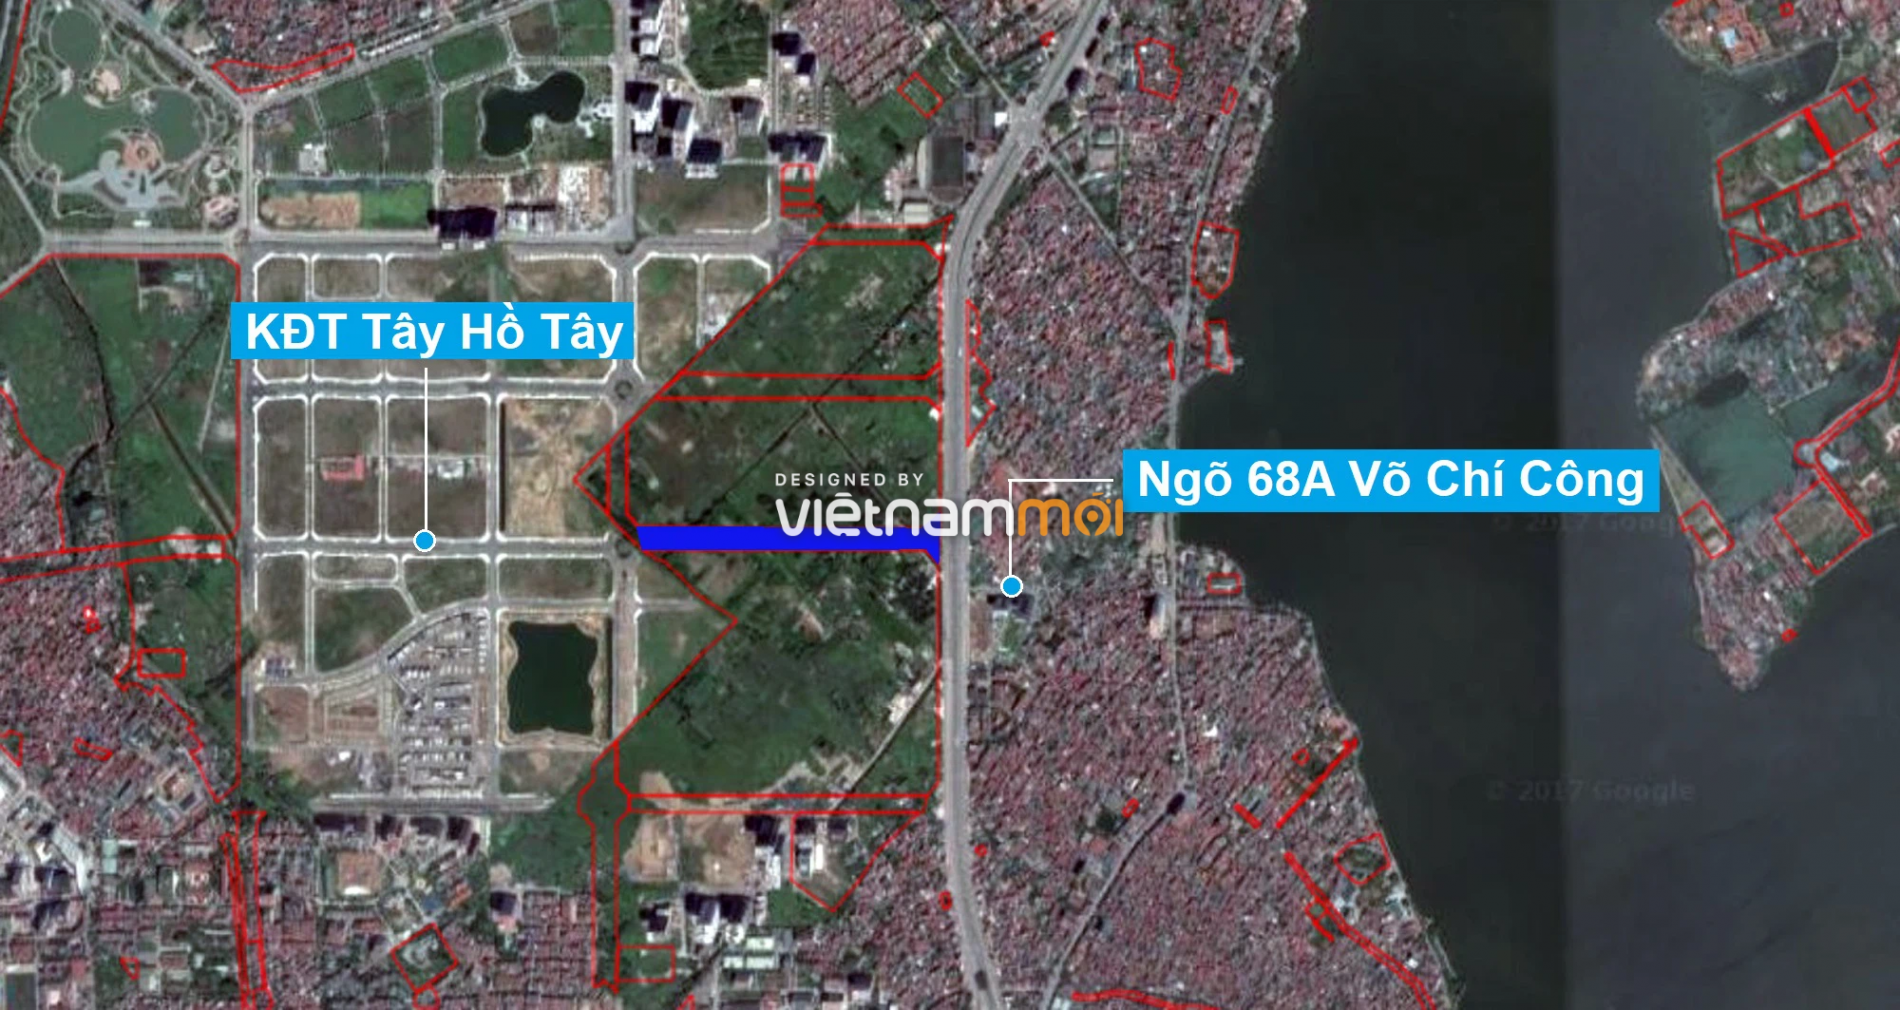 Những khu đất sắp thu hồi để mở đường ở quận Tây Hồ, Hà Nội (phần 1) - Ảnh 8.